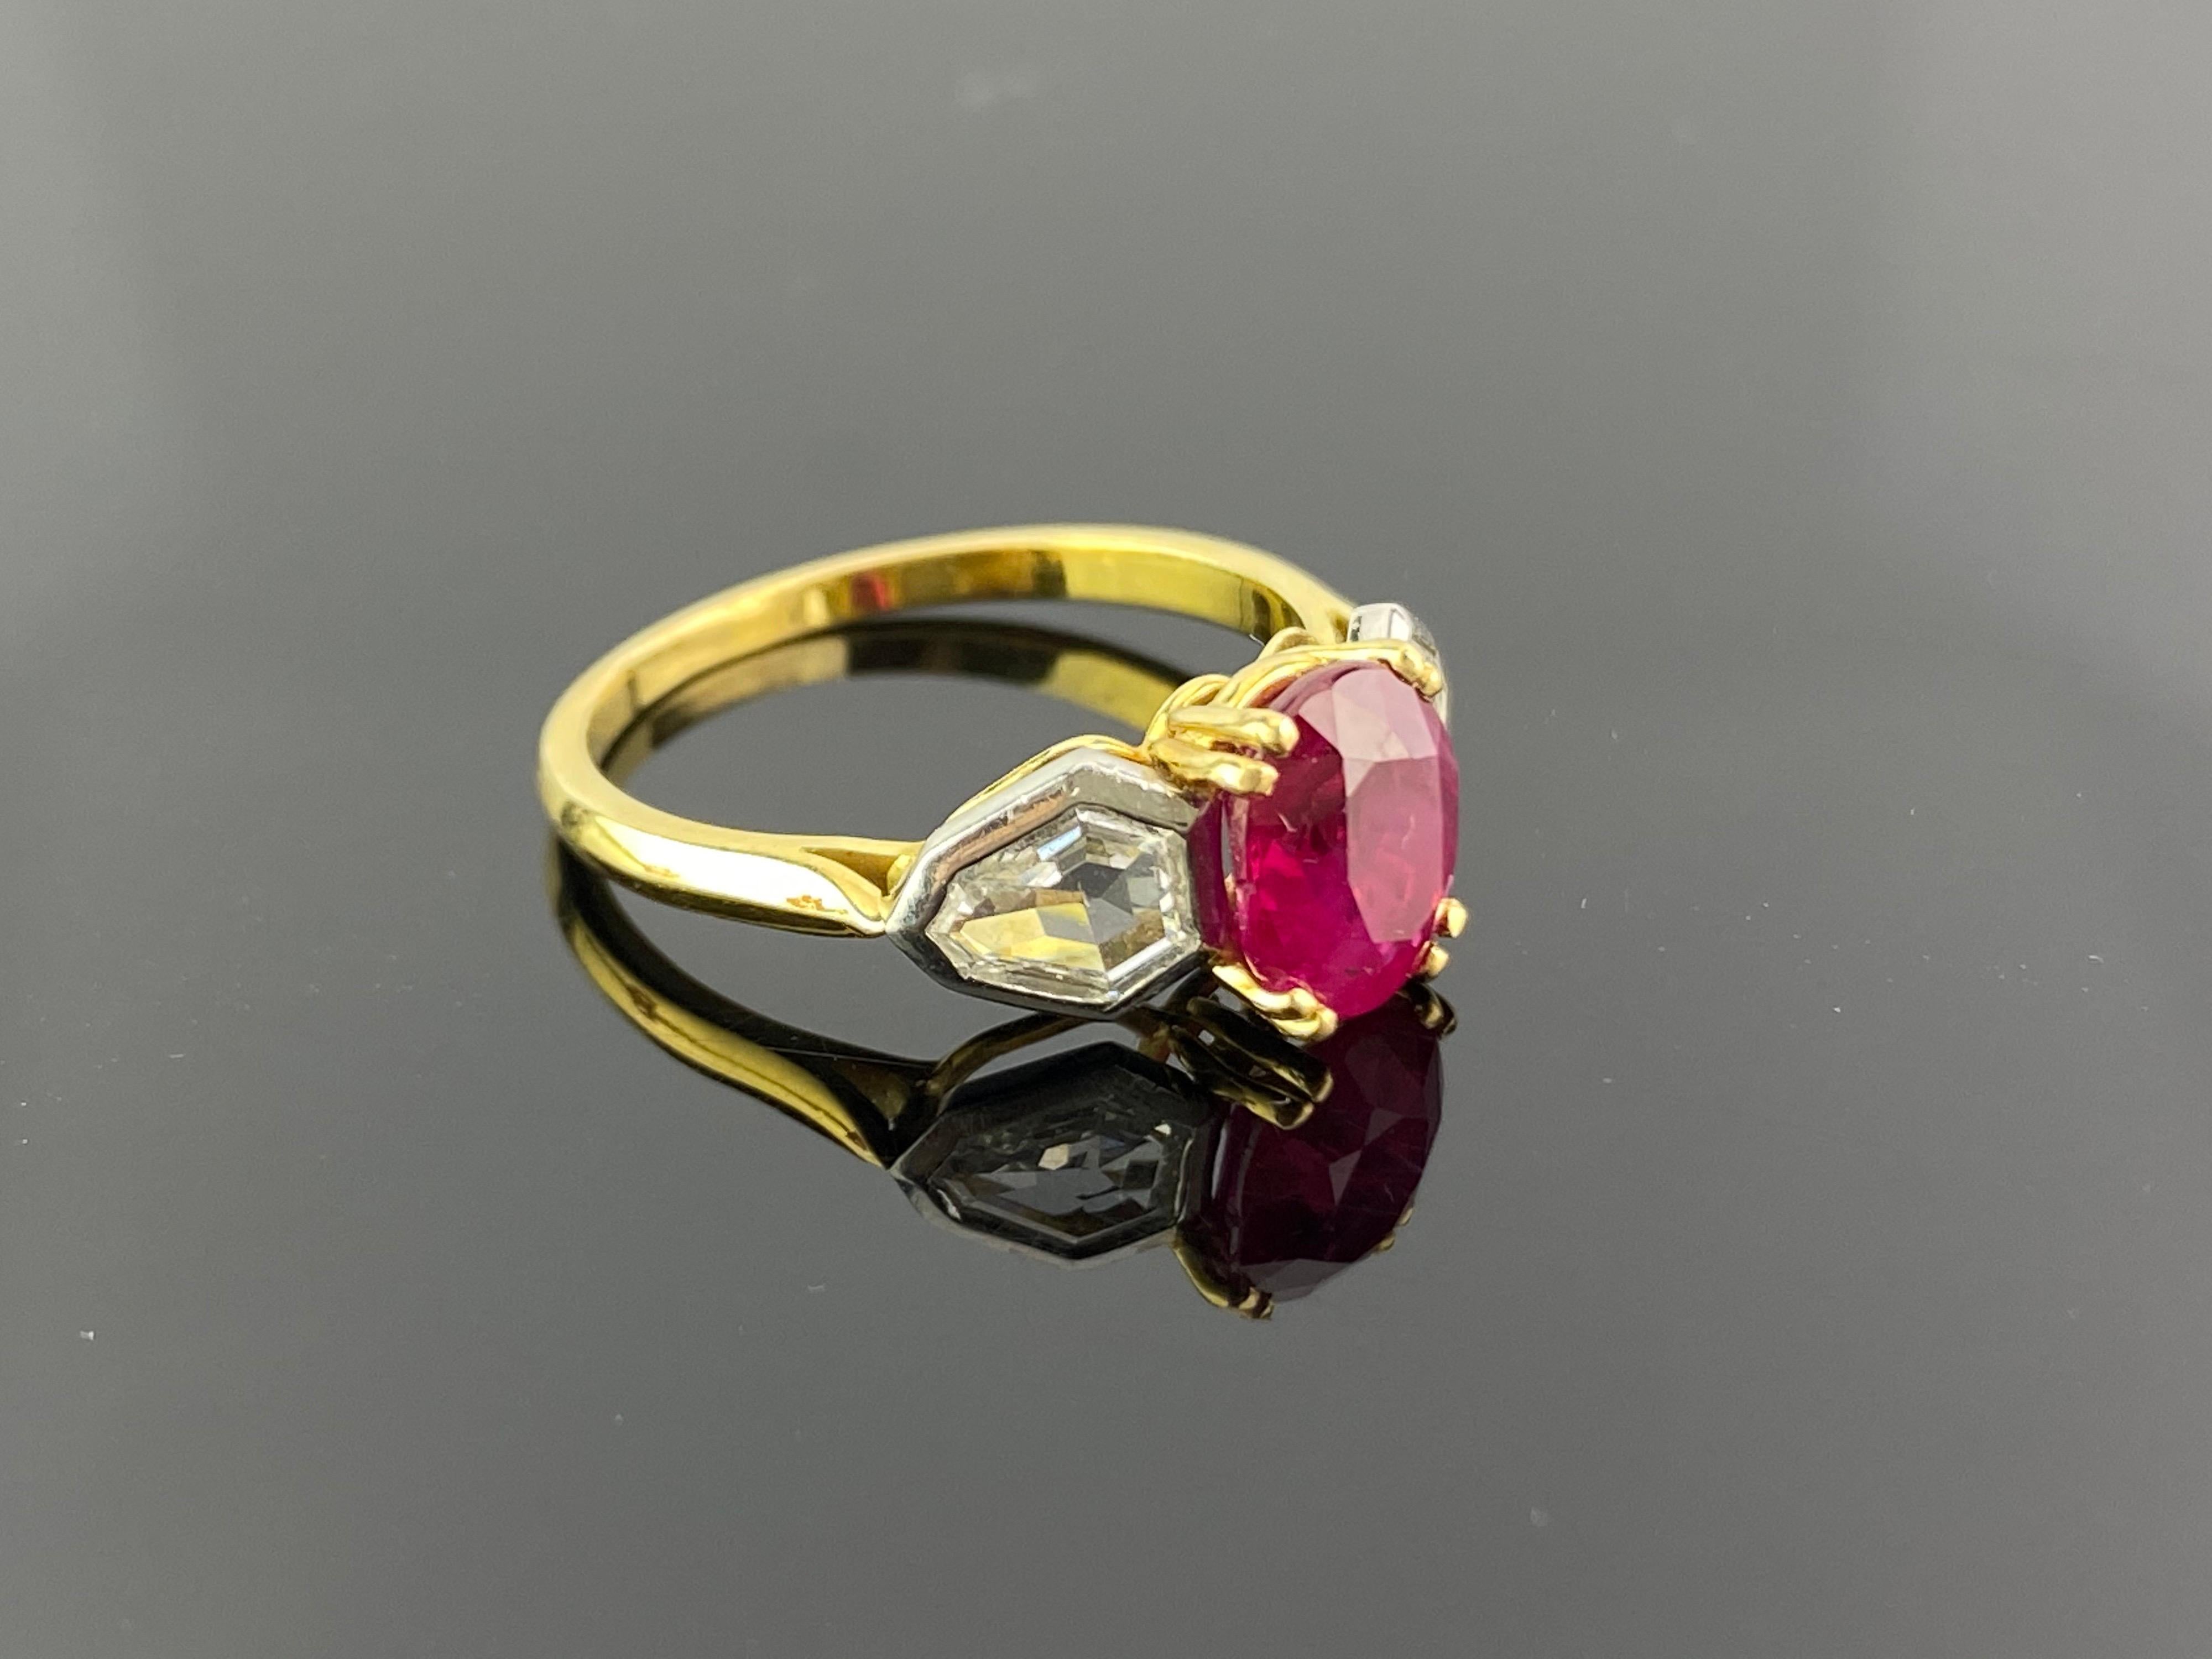 Ein wunderschöner ovaler burmesischer Rubin mit 2,01 Karat und ein Diamant mit Phantasieschliff, ein Verlobungsring mit drei Steinen.  Die Diamanten sind farblos und VVS-Qualität, und die Steine sind in massivem 18K Gelb- und Weißgold gefasst. Der